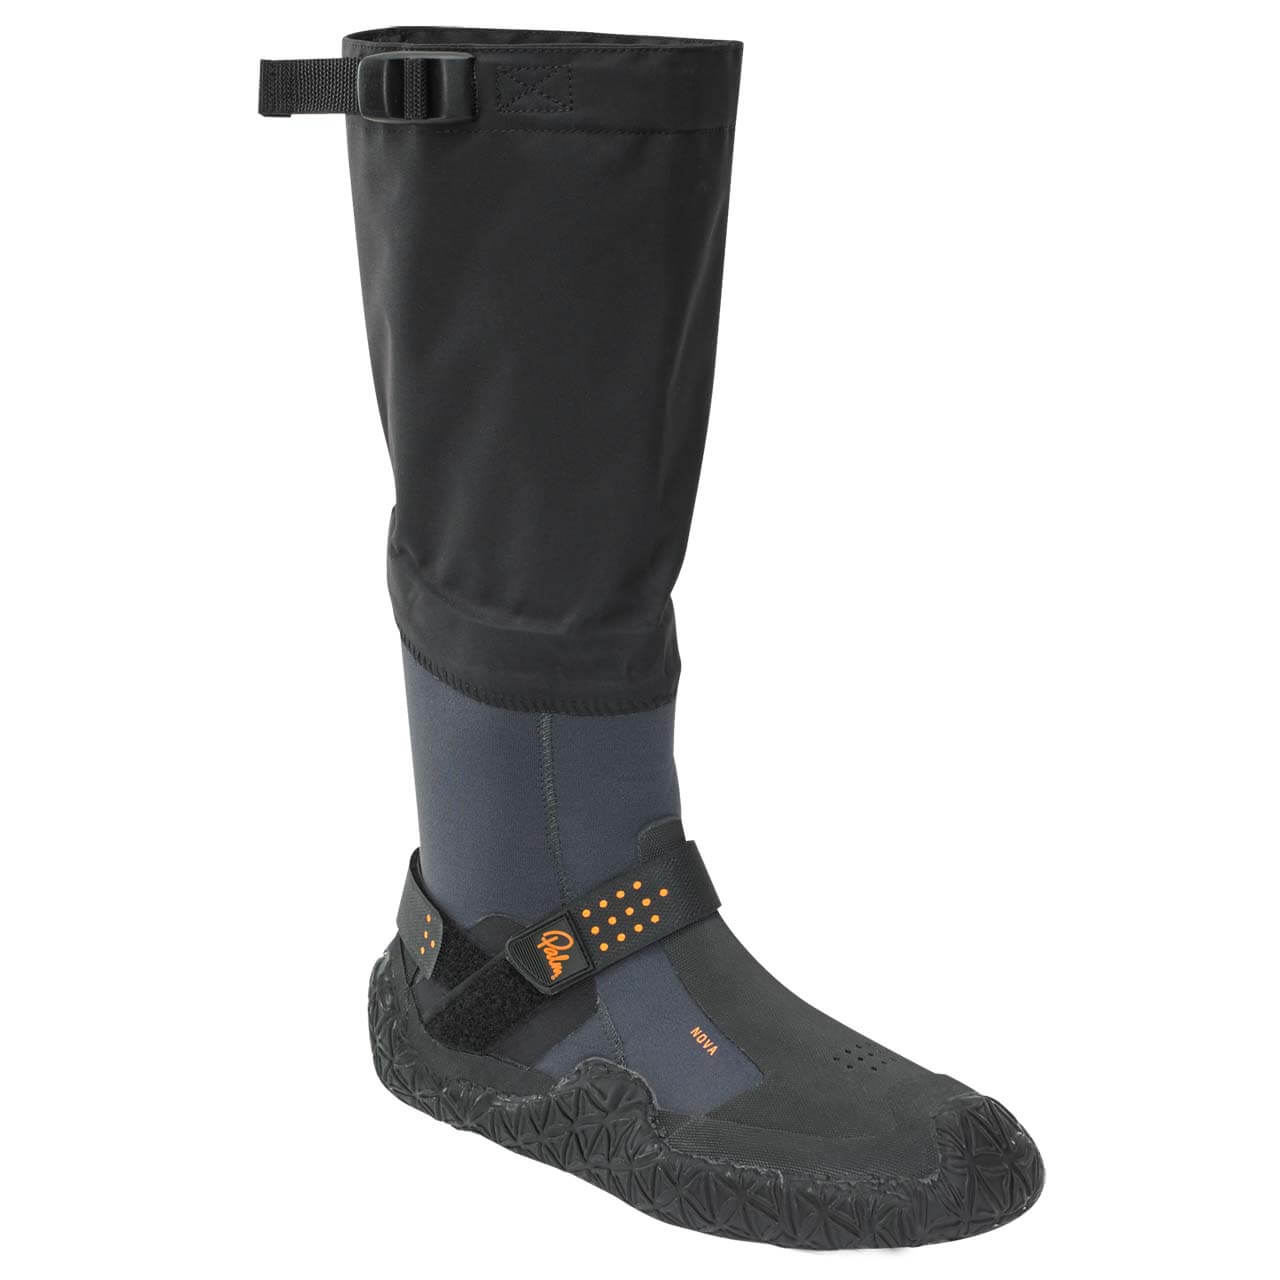 Palm Nova Boots - Jet Grey, UK 5